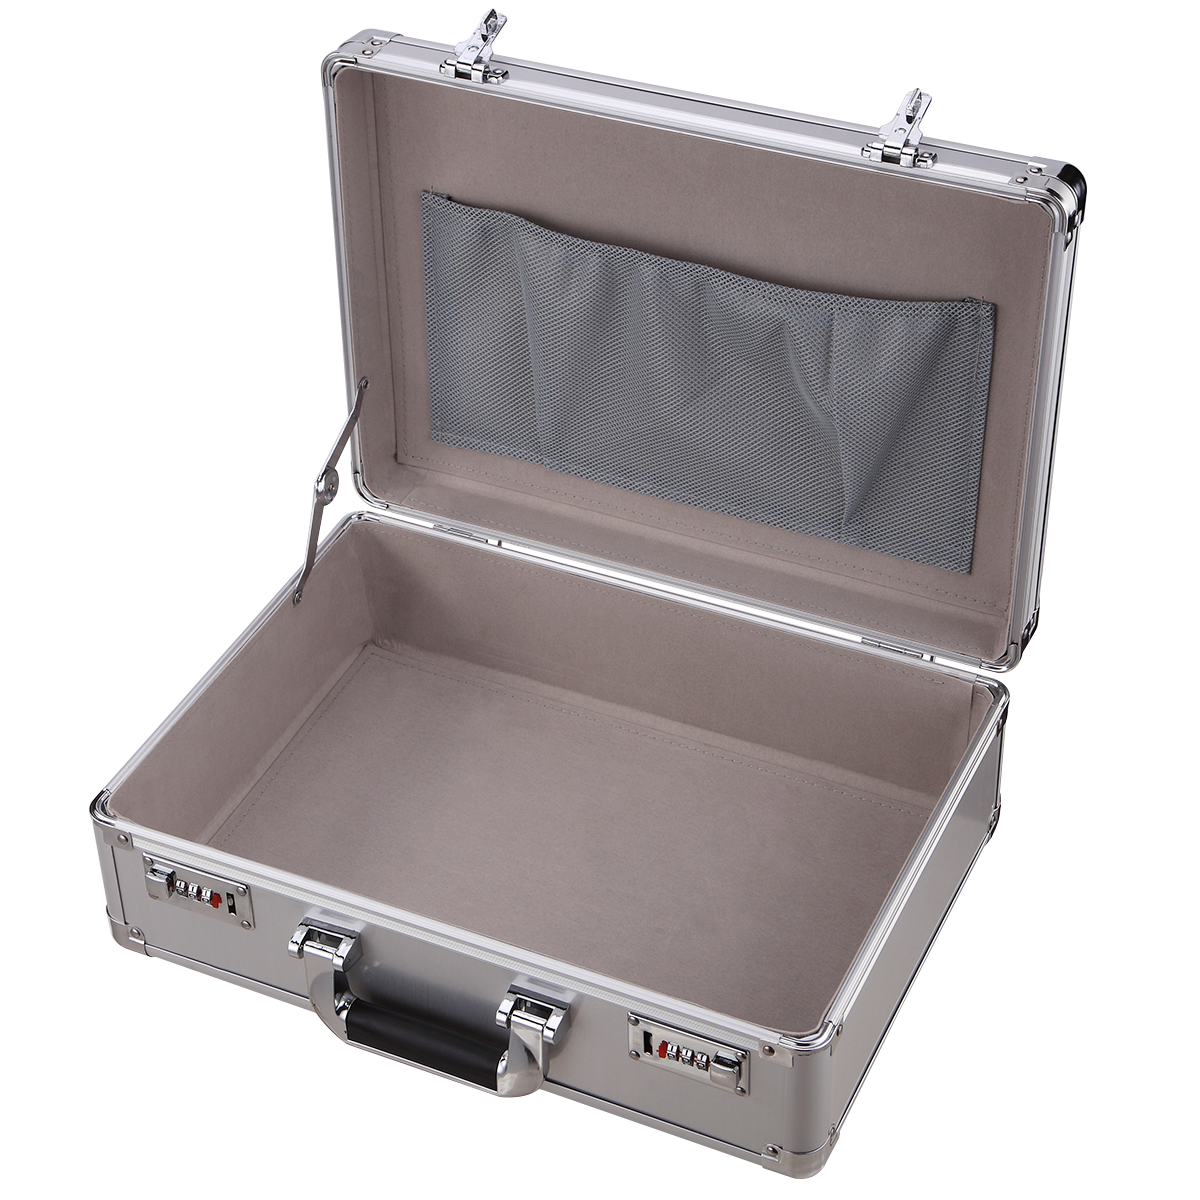 aluminum laptop briefcase